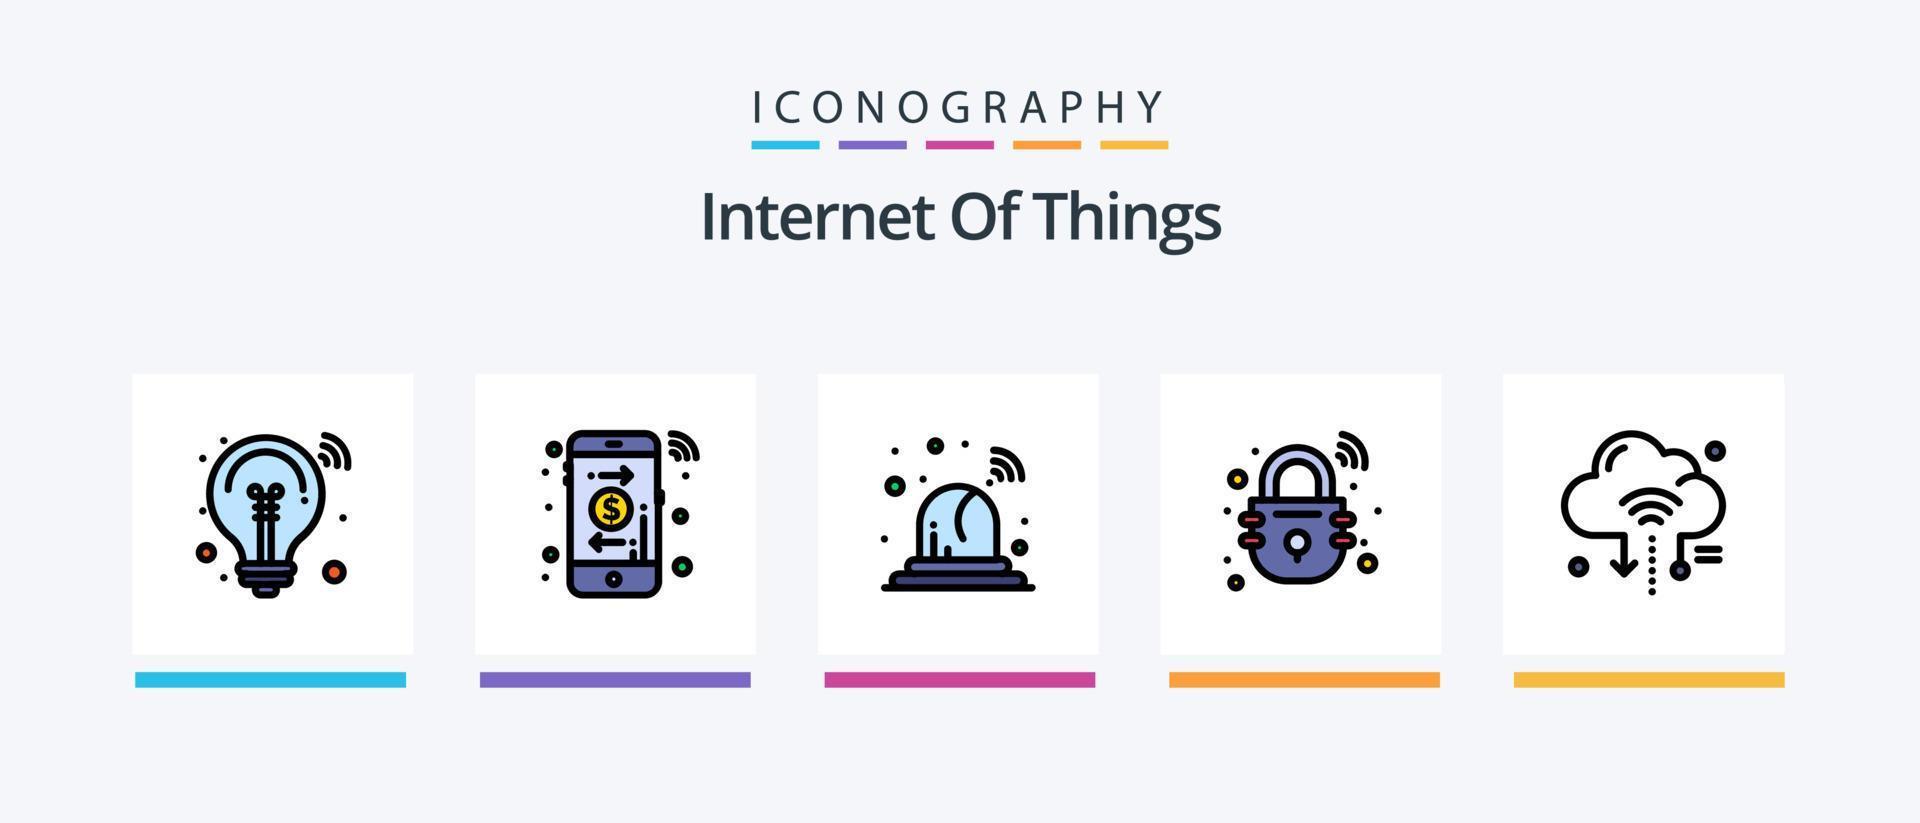 la línea de Internet de las cosas llenó el paquete de 5 iconos, incluida la nube. iot iot Internet. señales diseño de iconos creativos vector